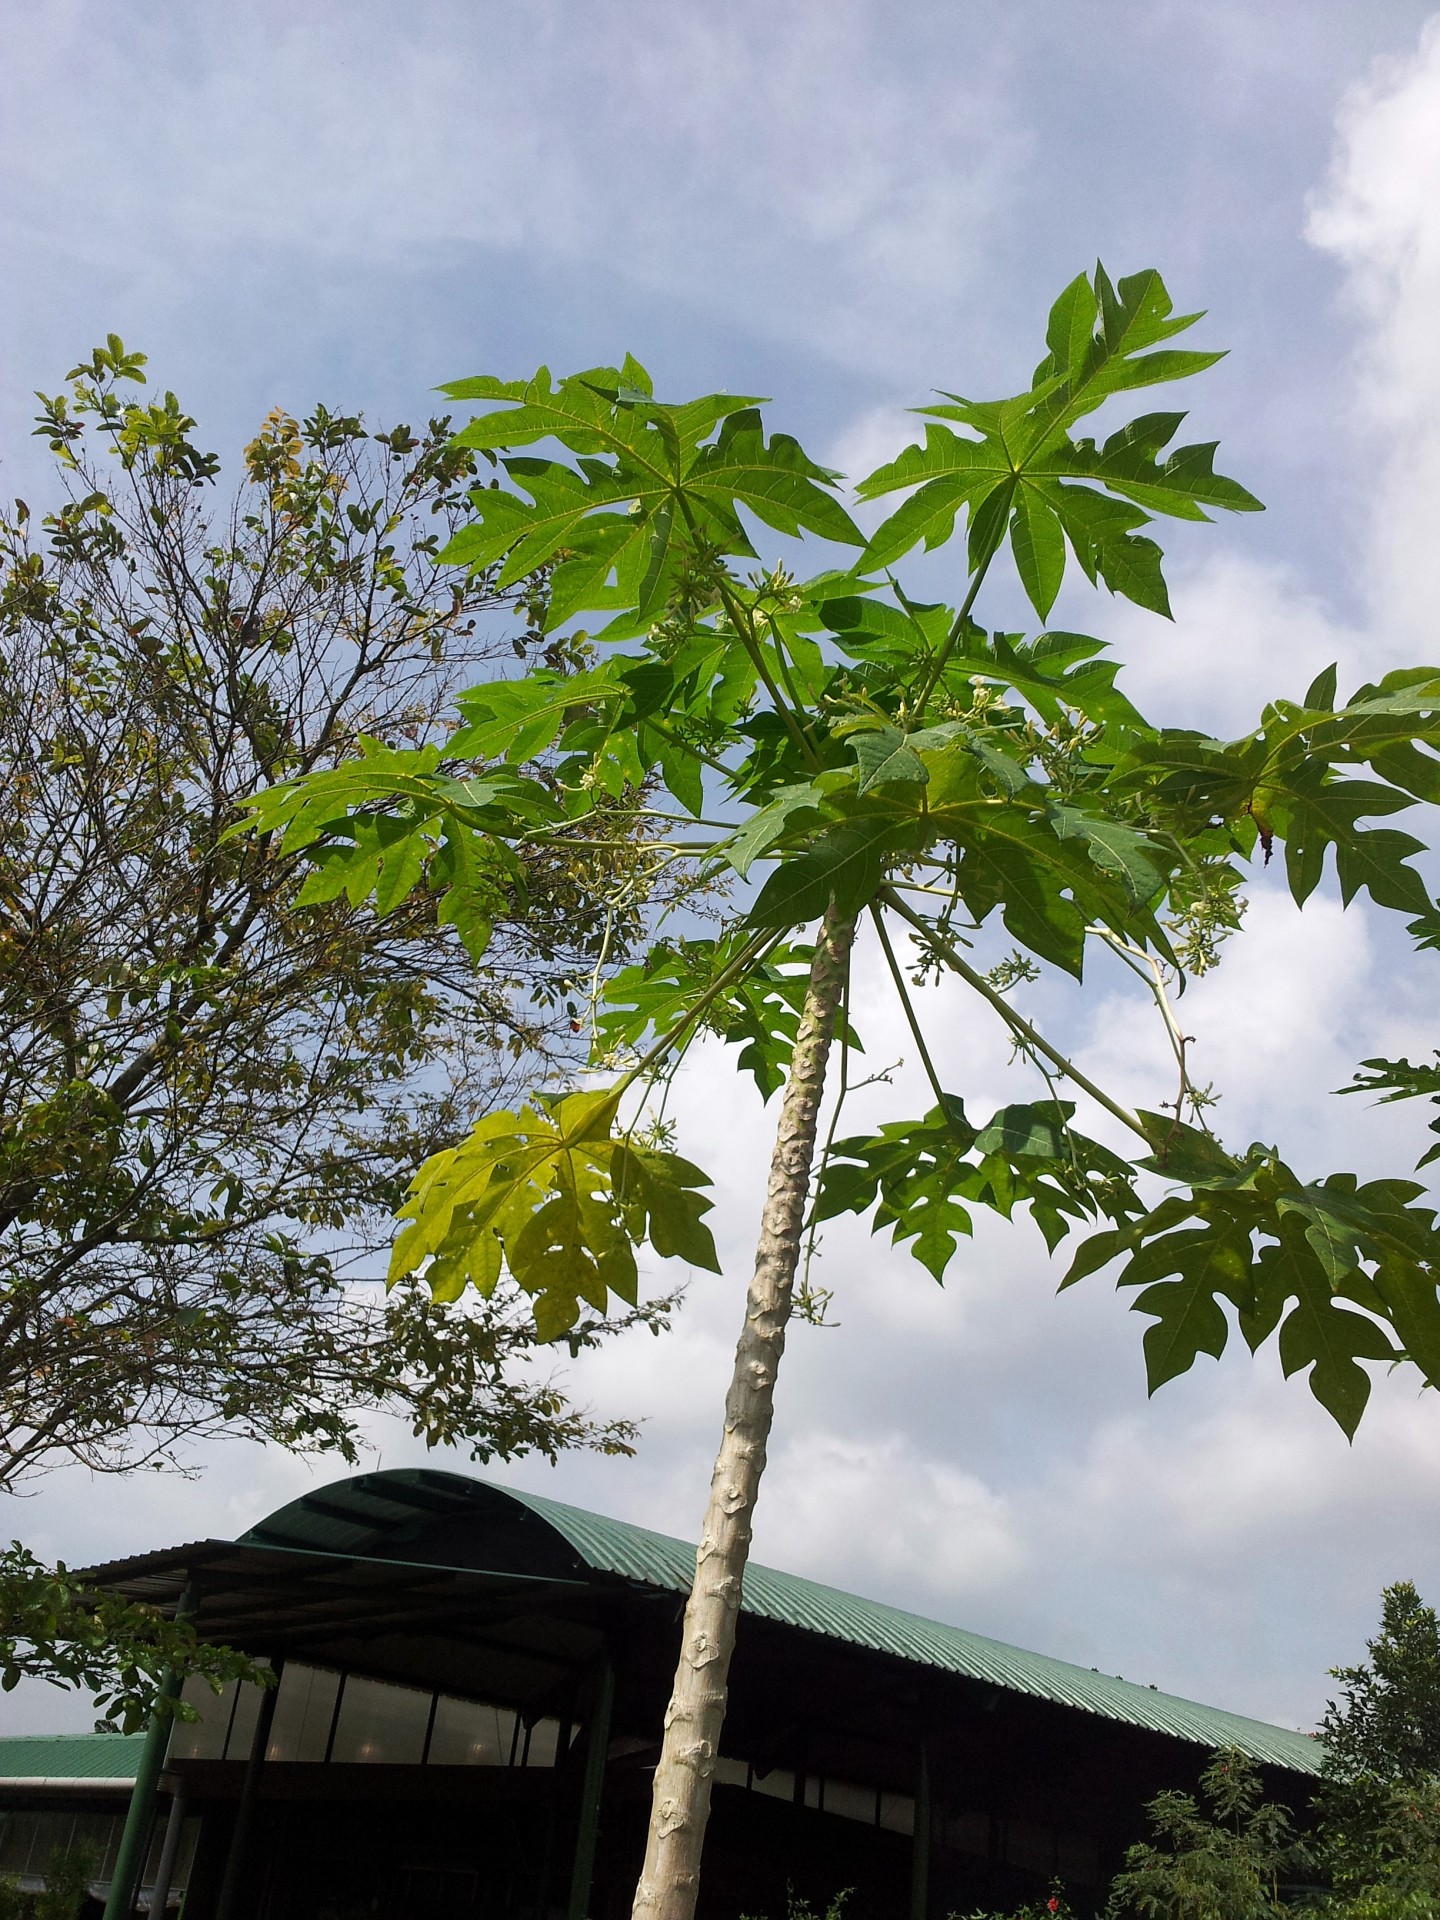 мужского дерева папайи с цветком